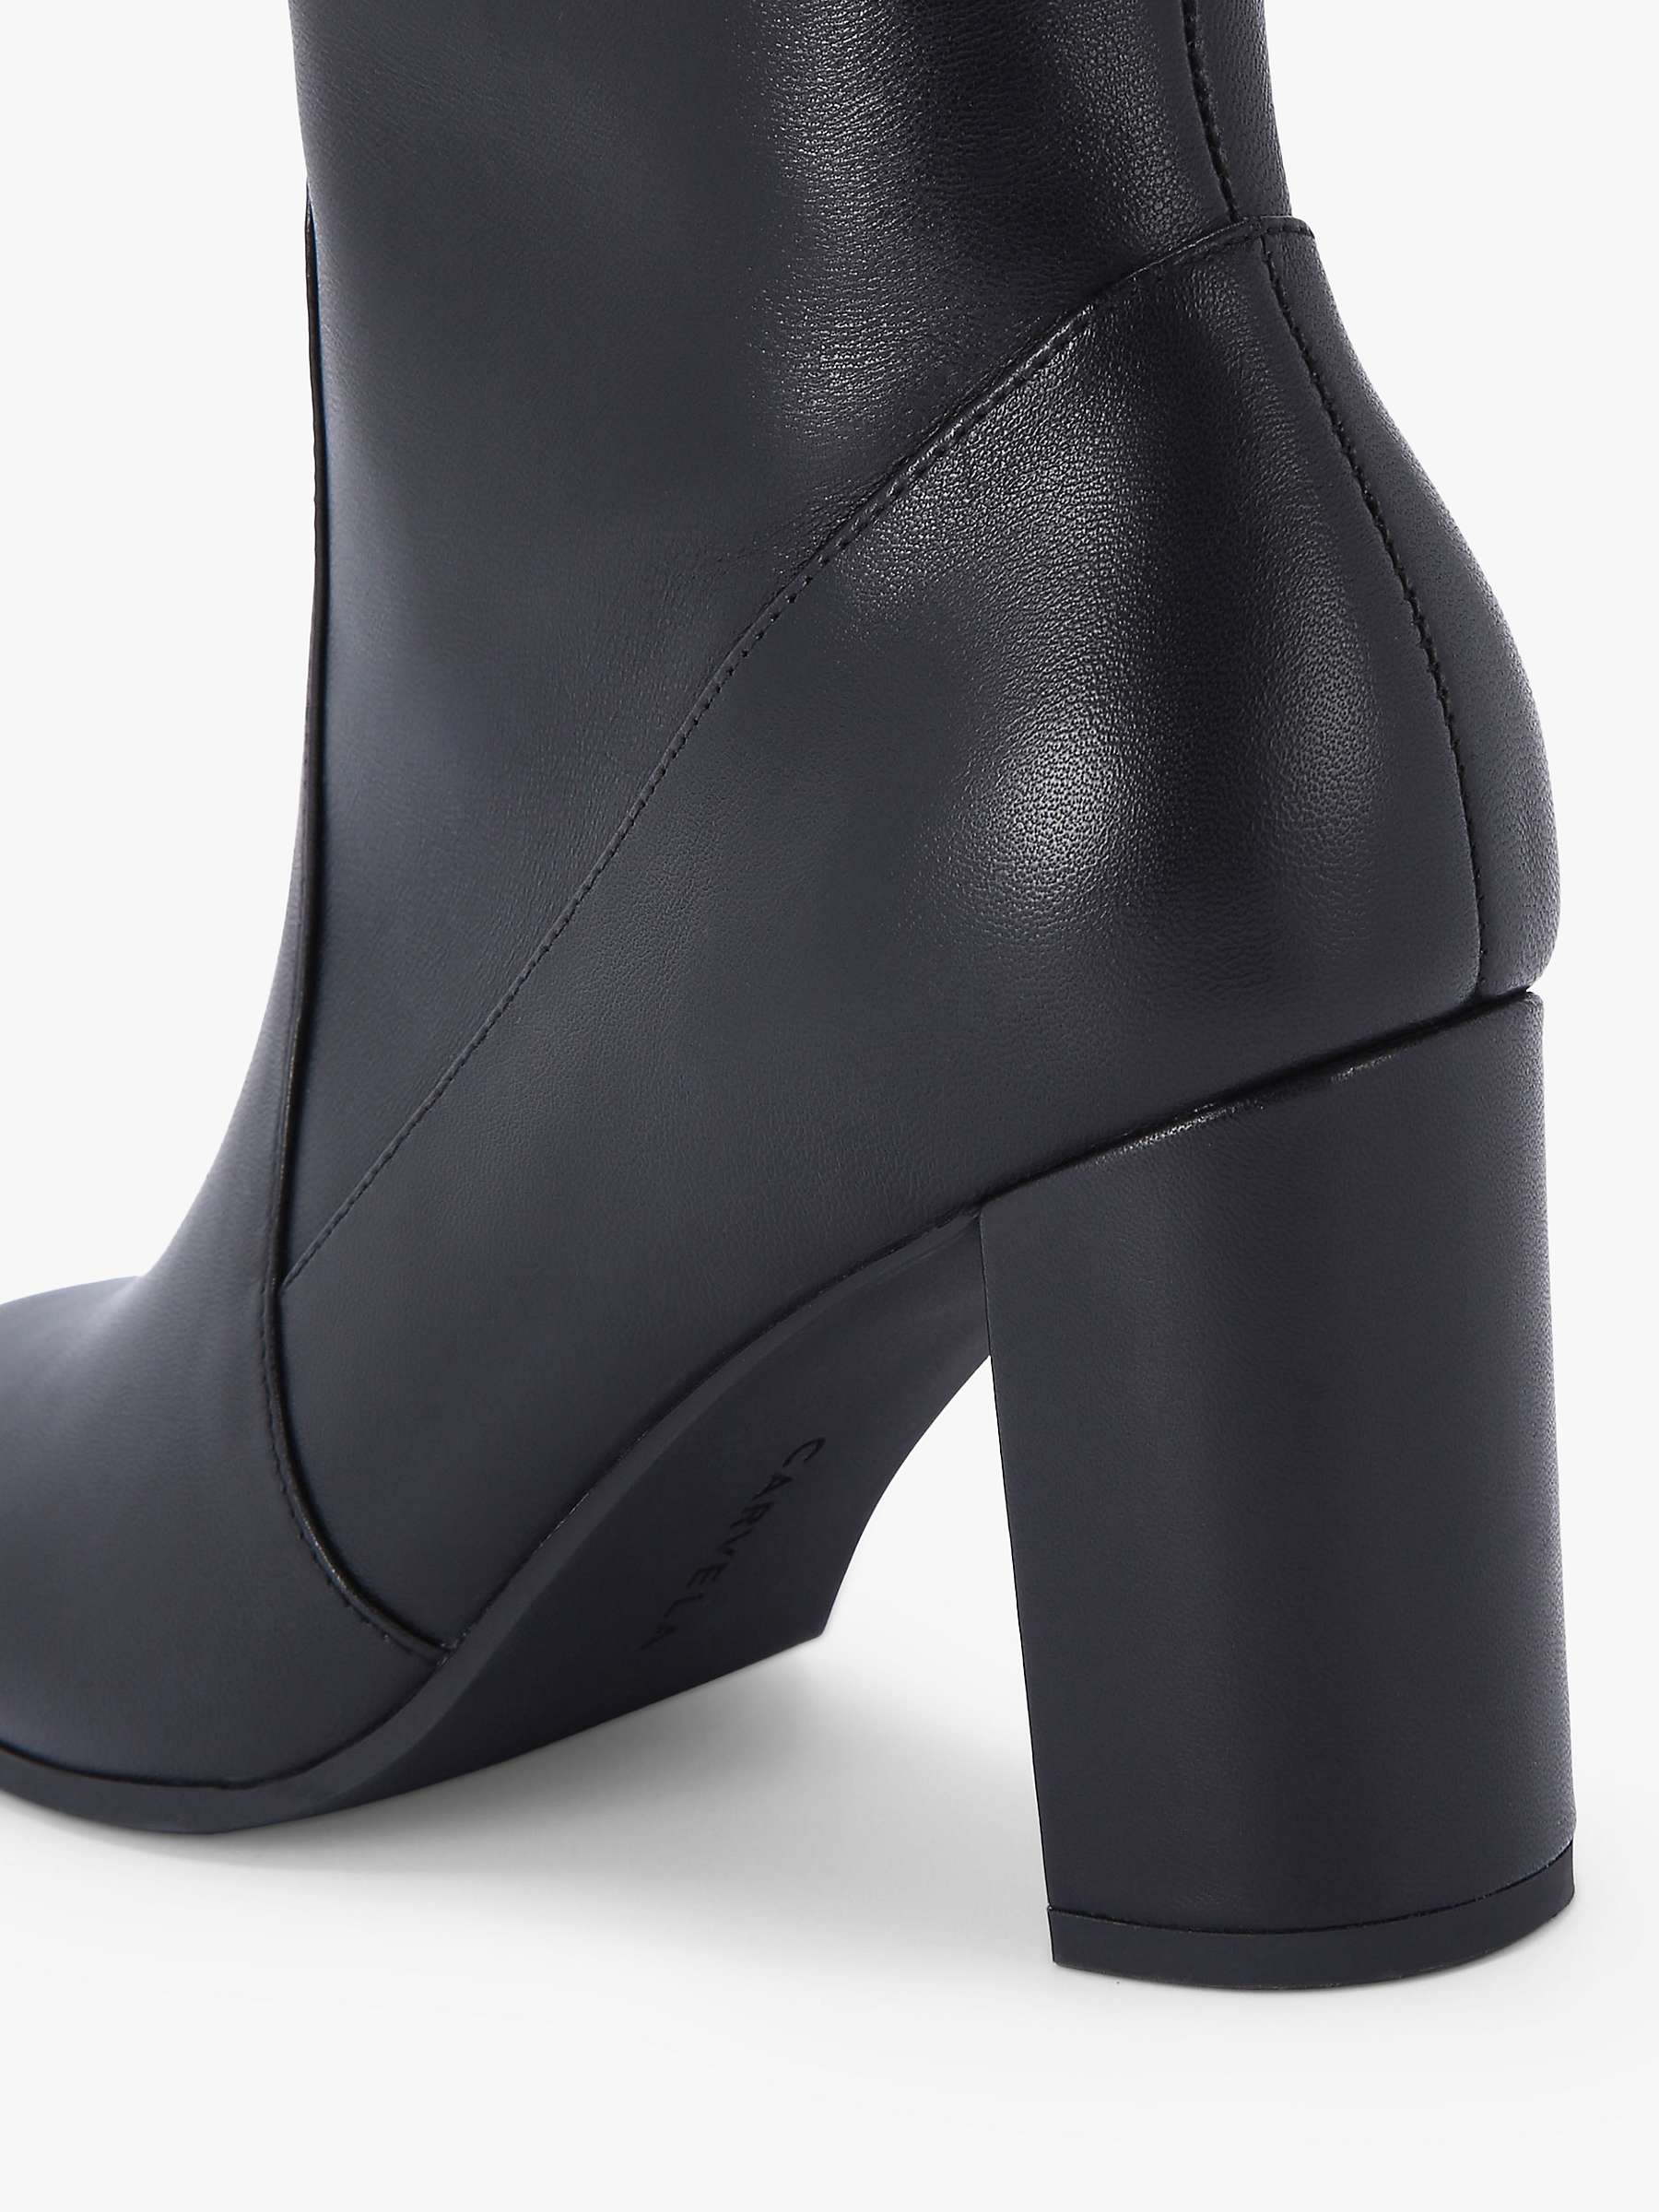 Buy Carvela Pose Leather Knee High Boots, Black Online at johnlewis.com